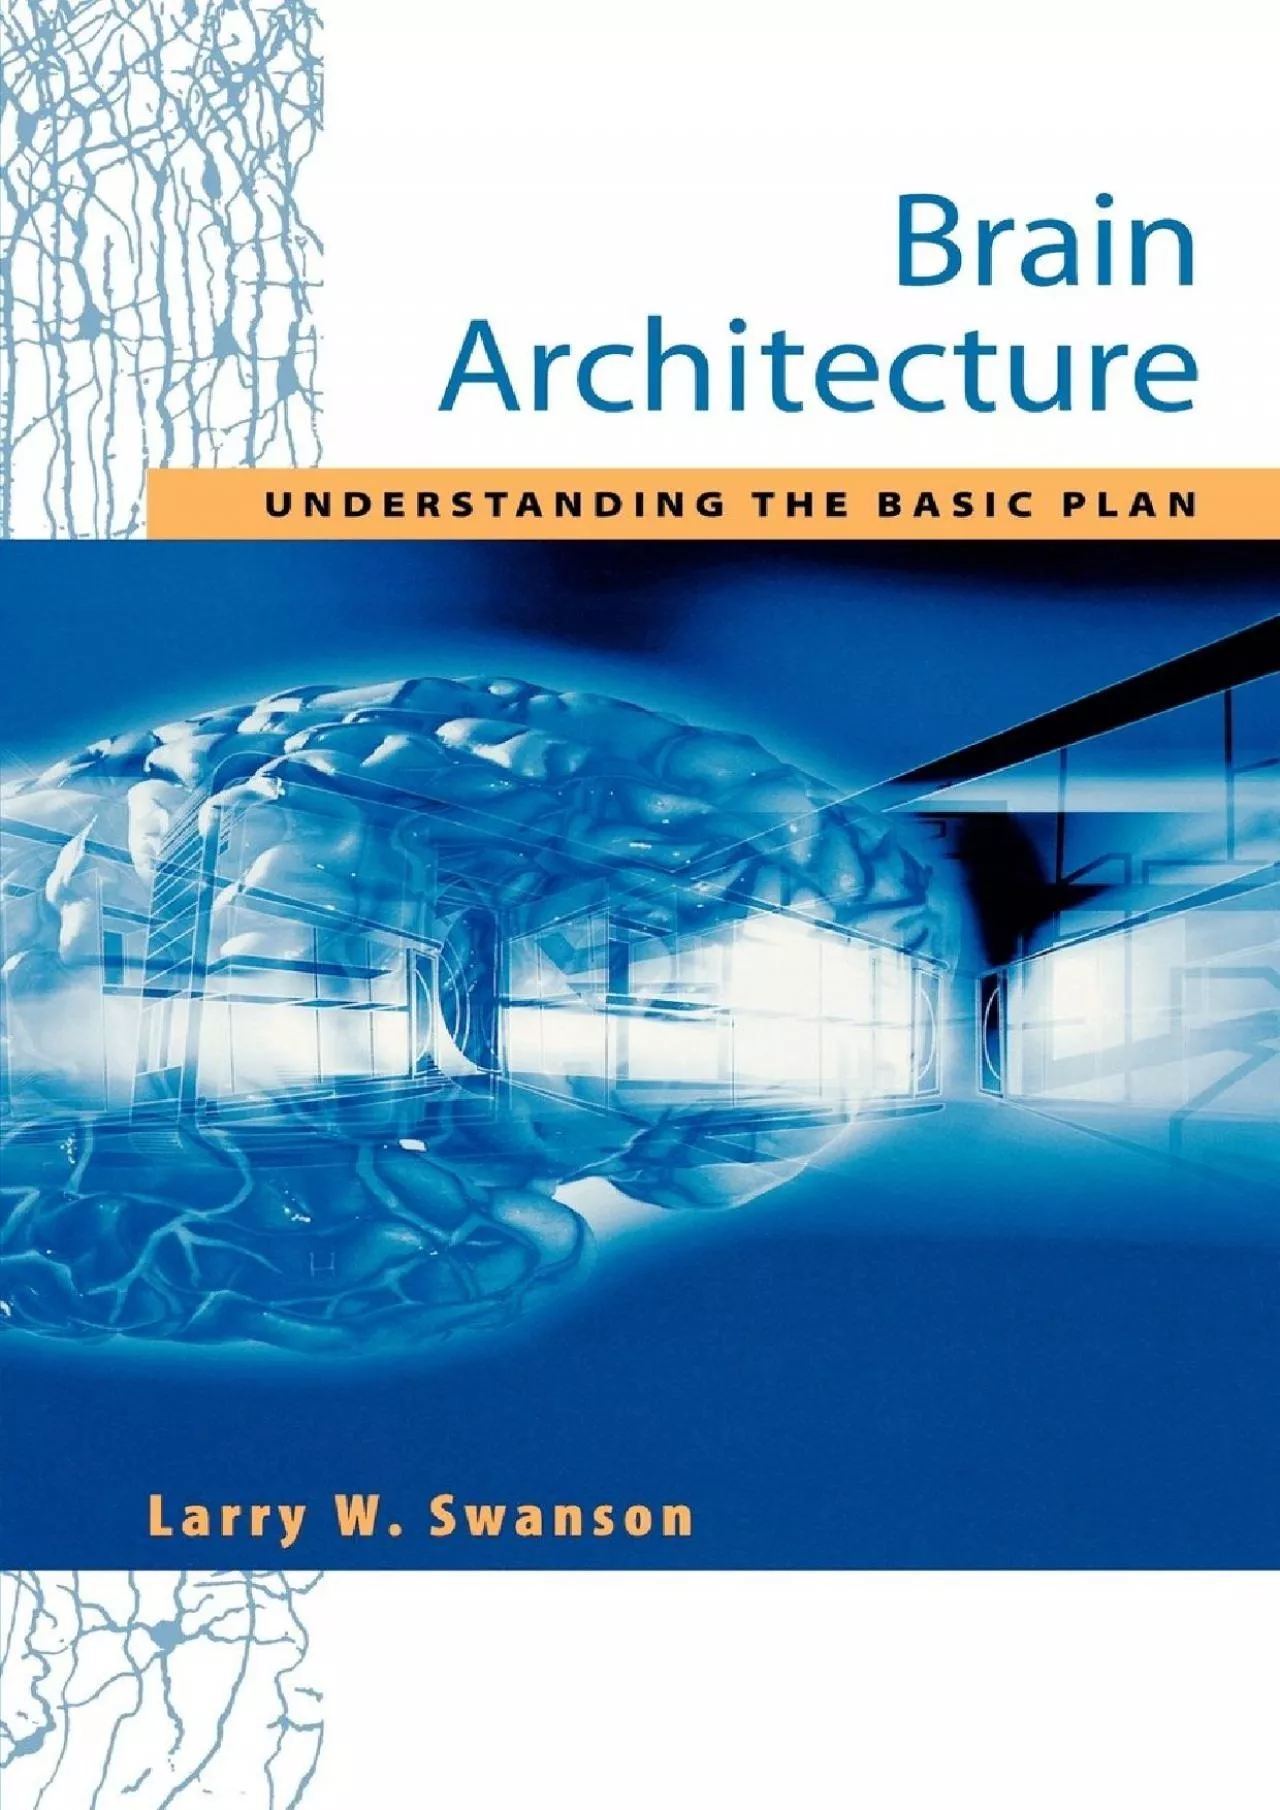 (BOOK)-Brain Architecture: Understanding the Basic Plan (Medicine)